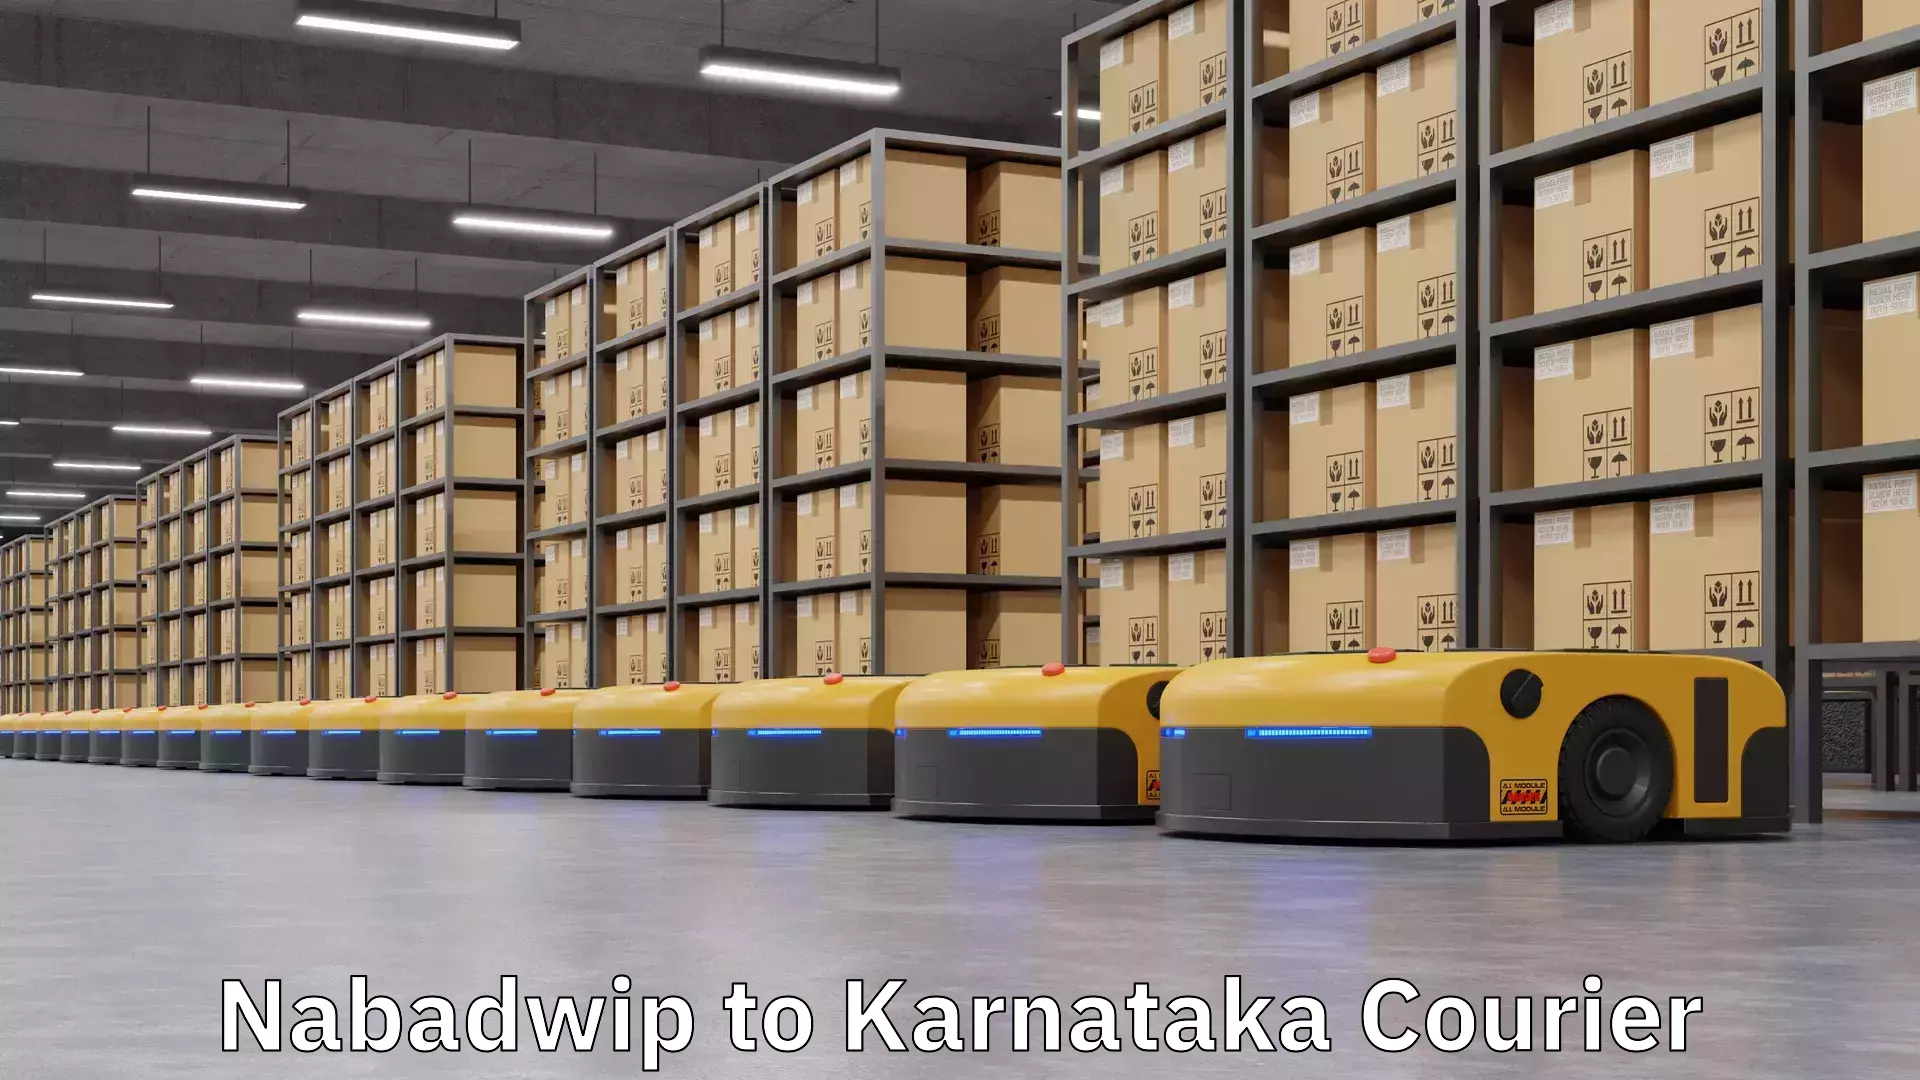 Next day courier Nabadwip to Karnataka